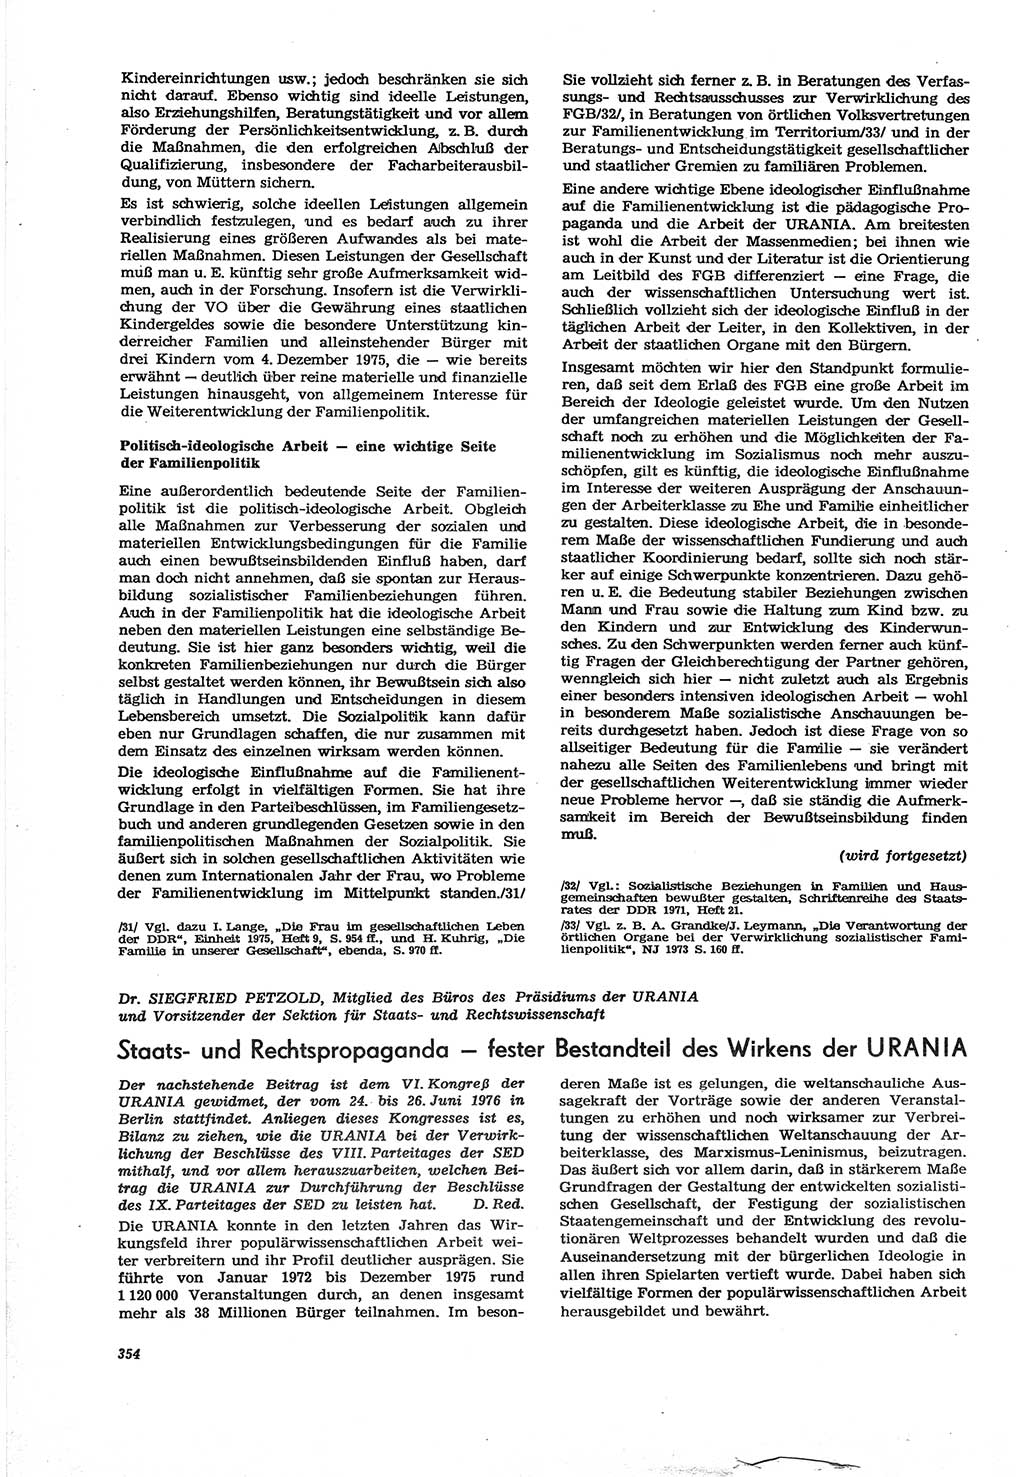 Neue Justiz (NJ), Zeitschrift für Recht und Rechtswissenschaft [Deutsche Demokratische Republik (DDR)], 30. Jahrgang 1976, Seite 354 (NJ DDR 1976, S. 354)